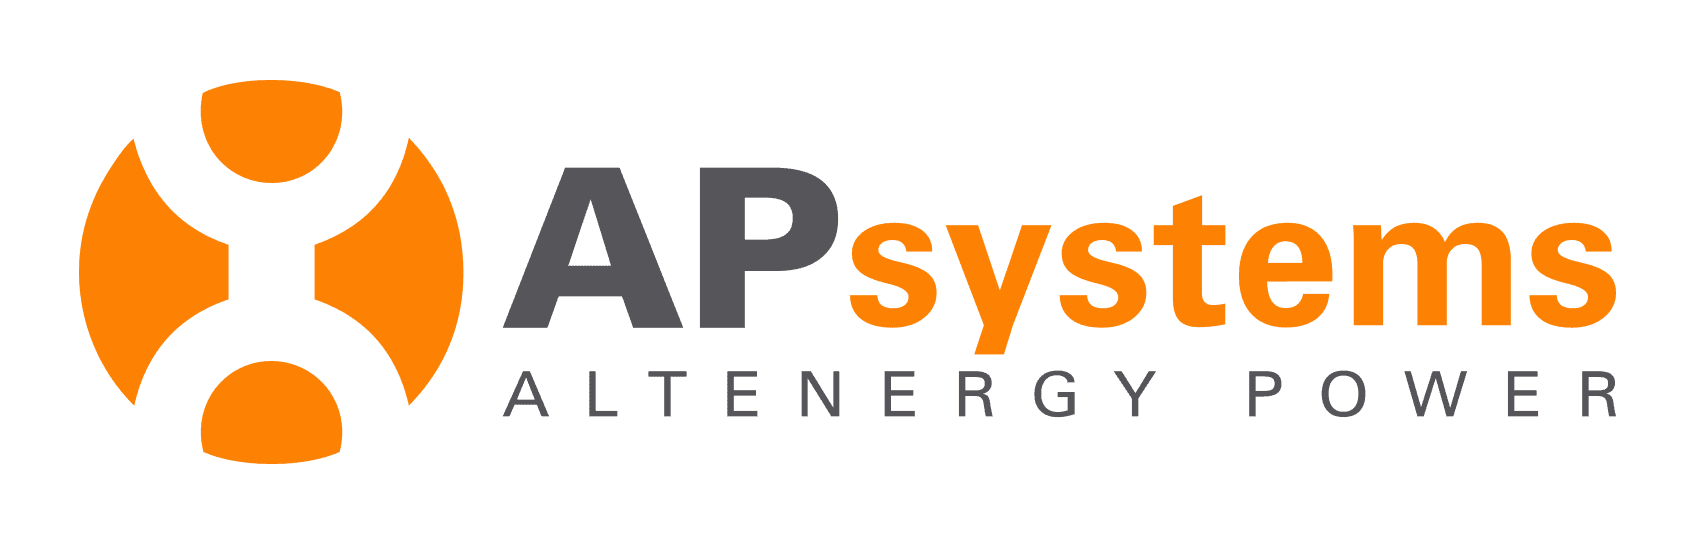 APsystems-logo.png